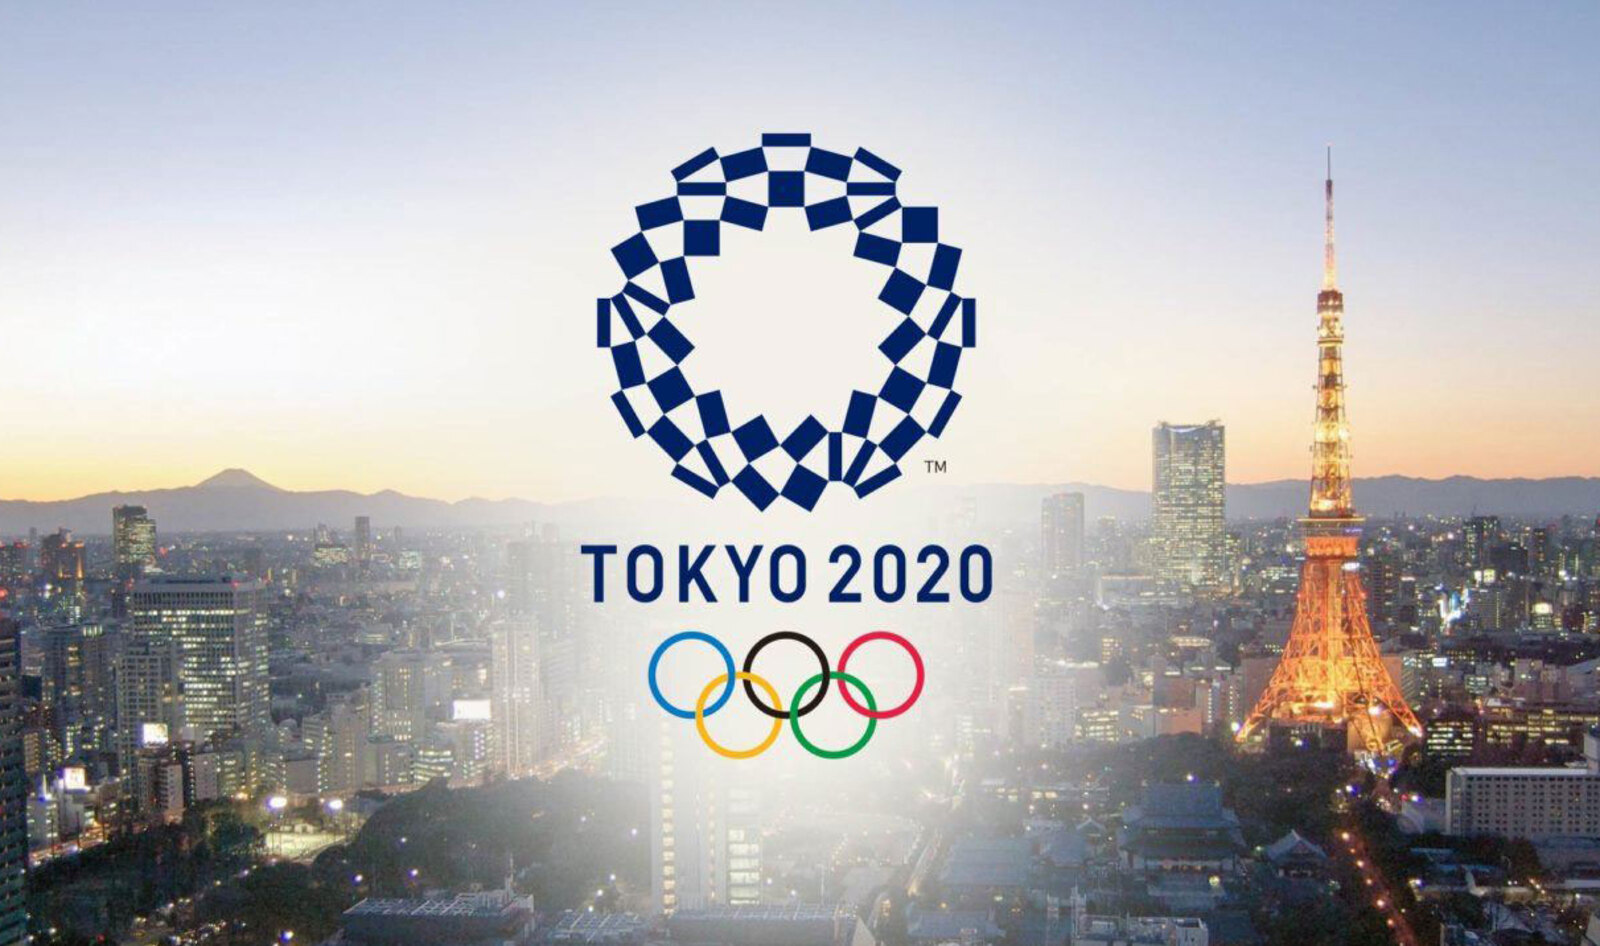 Japan Prepares for 2020 Olympics By Making Restaurant Menus More Vegan-Friendly